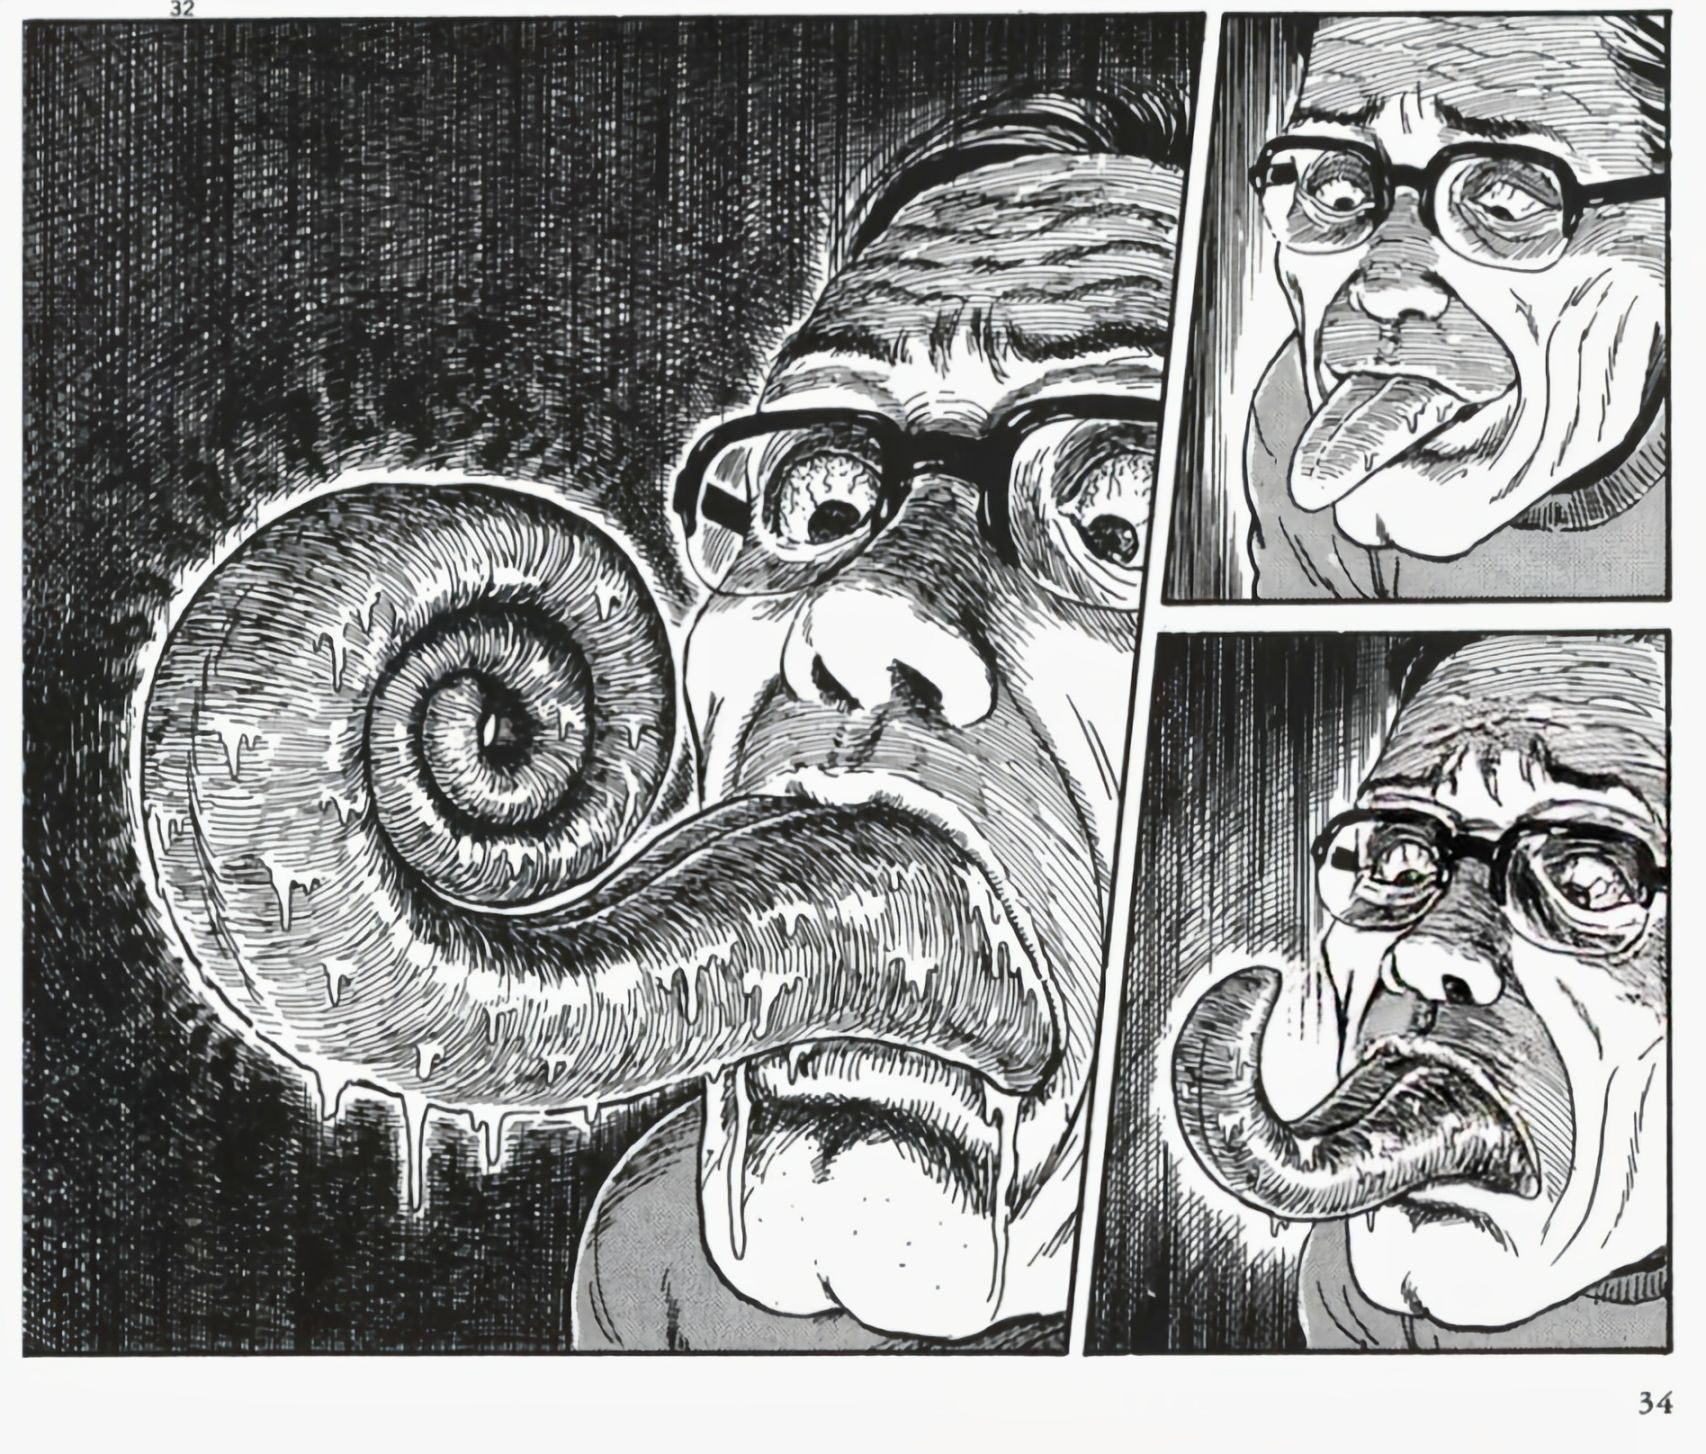 【影視動漫】伊藤潤二的恐怖漫畫《漩渦》-第13張